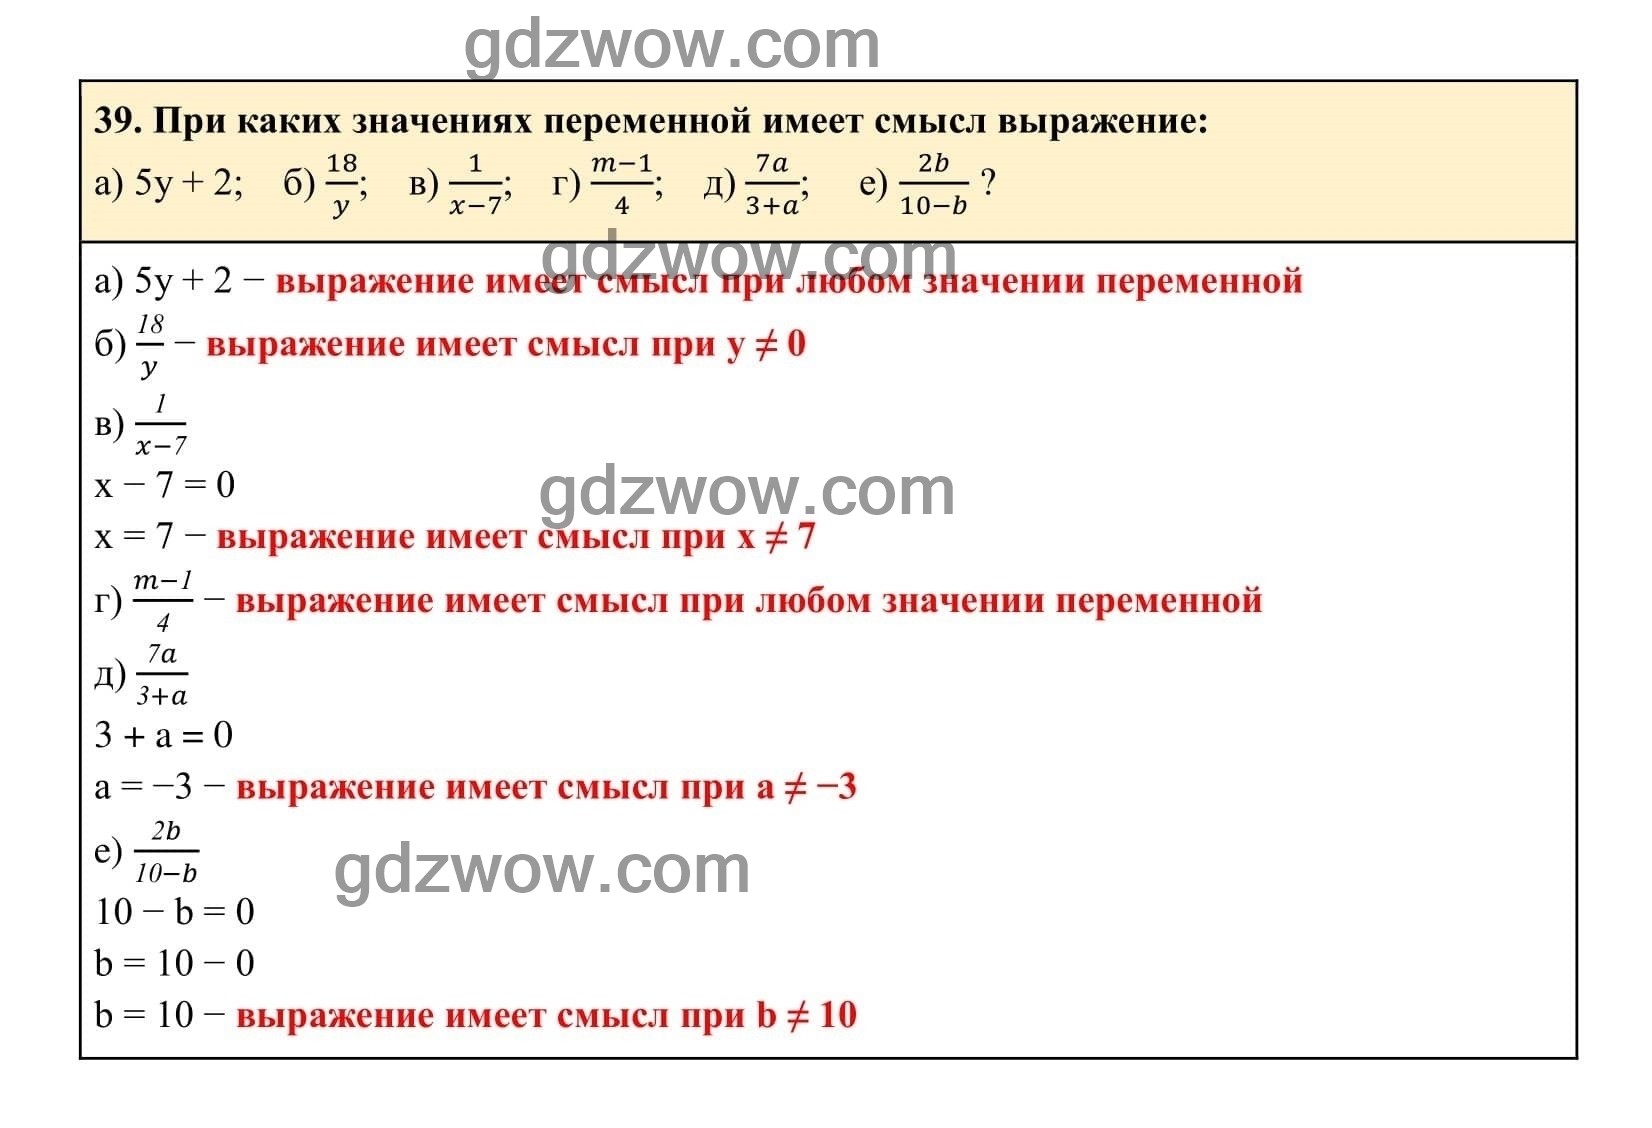 Упражнение 39 - ГДЗ по Алгебре 7 класс Учебник Макарычев (решебник) - GDZwow